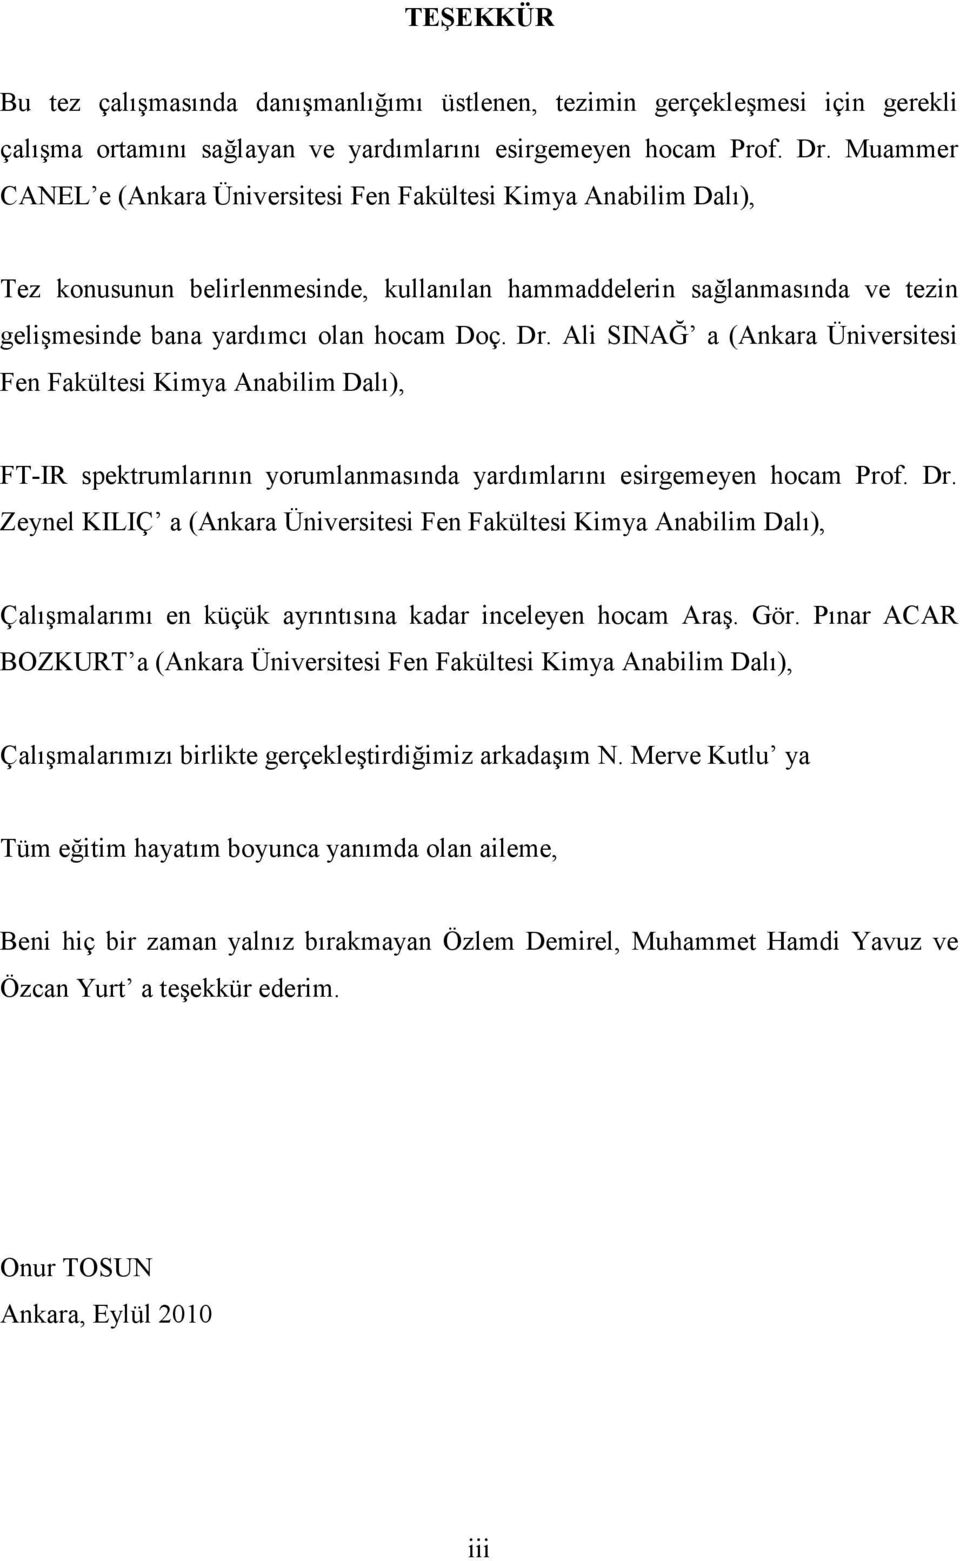 Ali SINAĞ a (Ankara Üniversitesi Fen Fakültesi Kimya Anabilim Dalı), FT-IR spektrumlarının yorumlanmasında yardımlarını esirgemeyen hocam Prof. Dr.